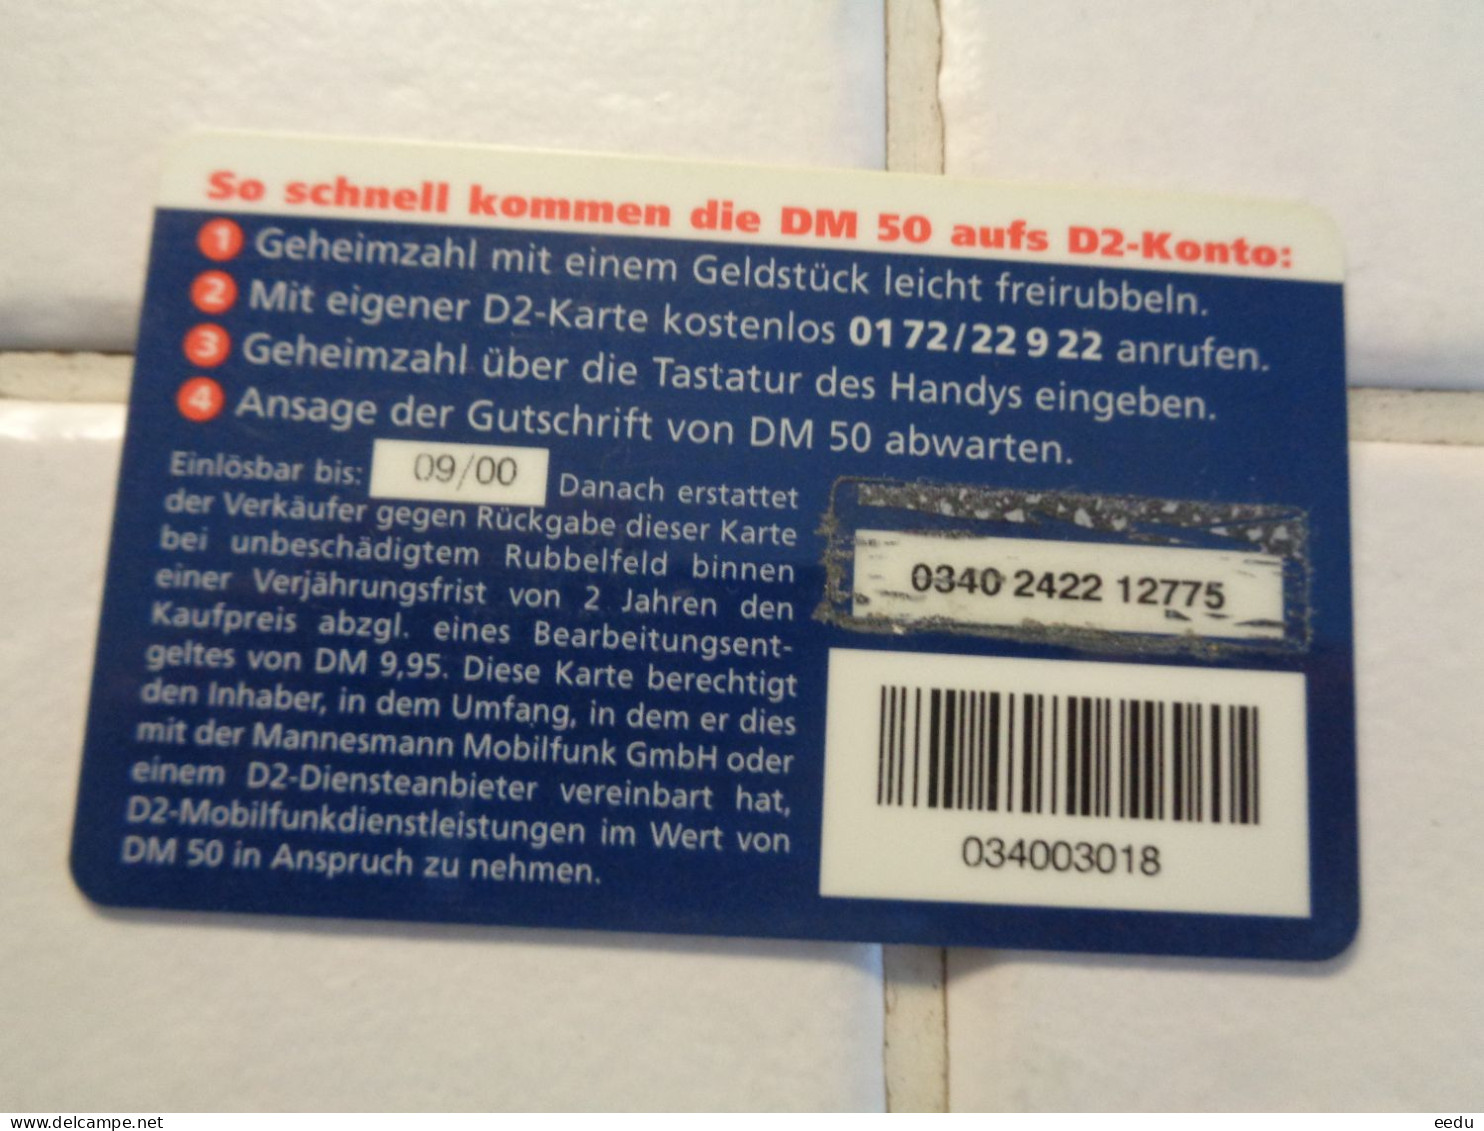 Germany Phonecard - GSM, Voorafbetaald & Herlaadbare Kaarten